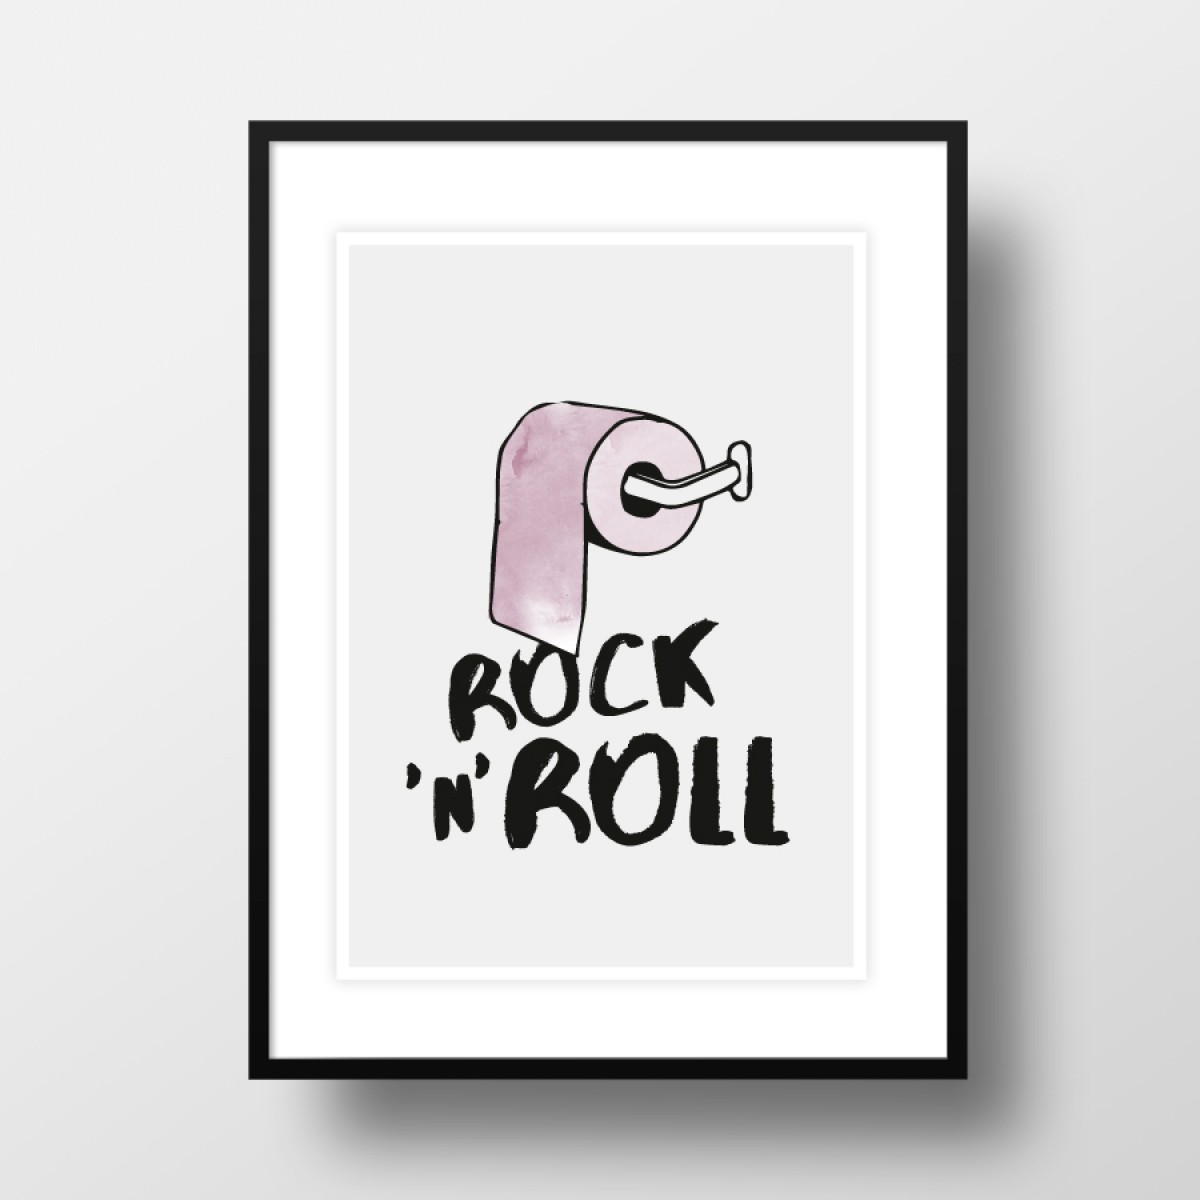 Amy & Kurt Berlin A4 Artprint "Rock'n'roll"